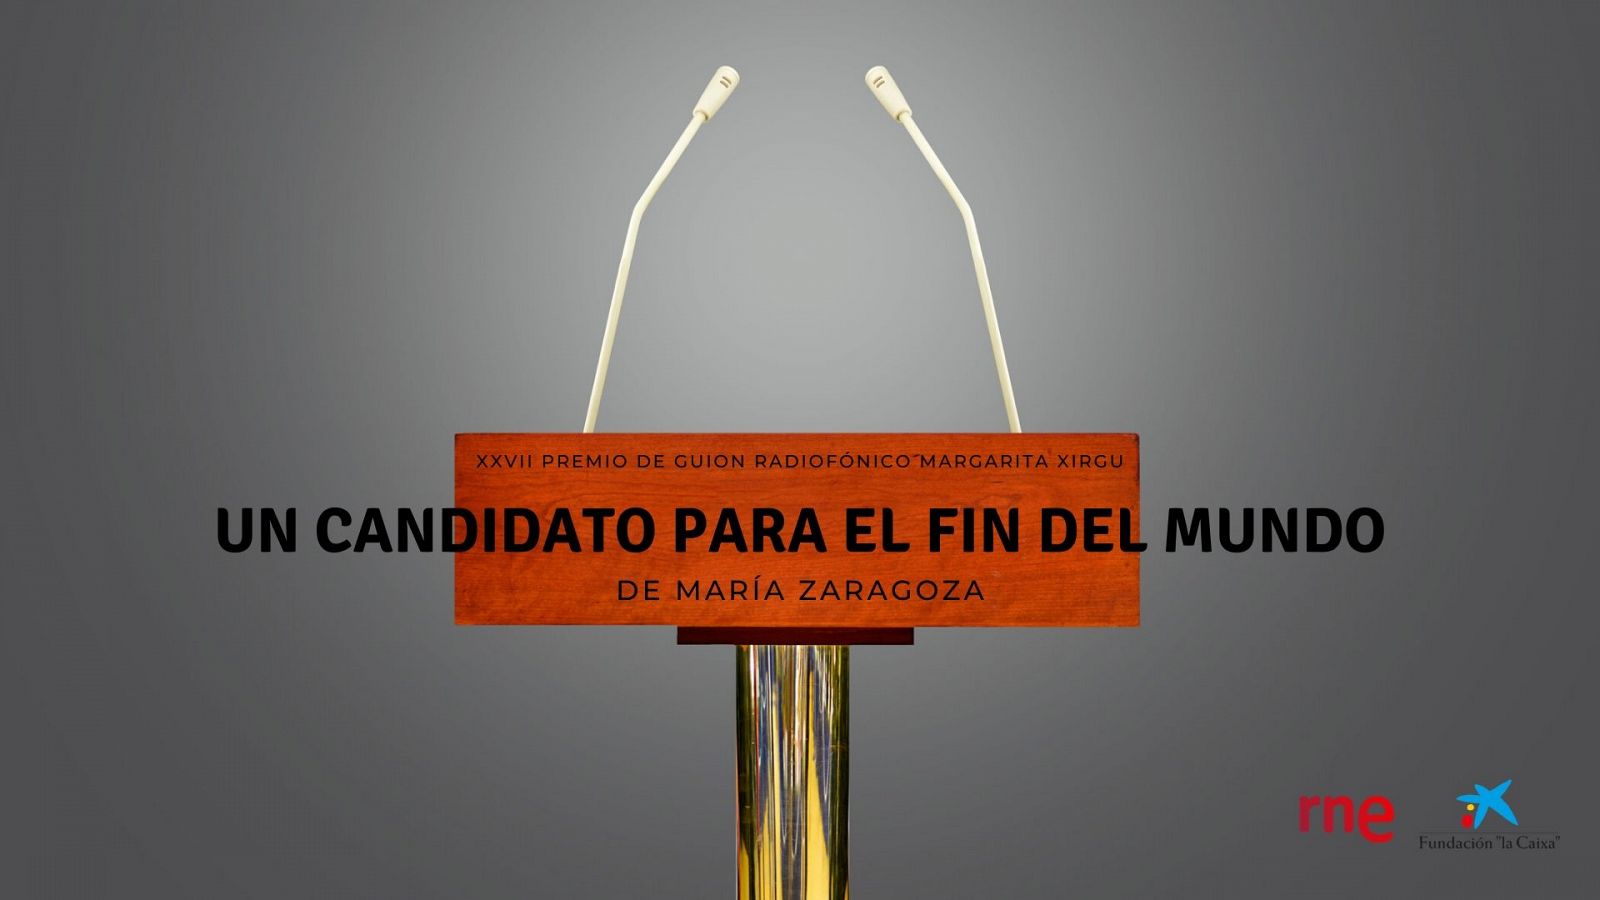 Vuelve a escuchar 'Un candidato para el fin del mundo', XXVII Premio de Guion Radiof�nico Margarita Xirgu